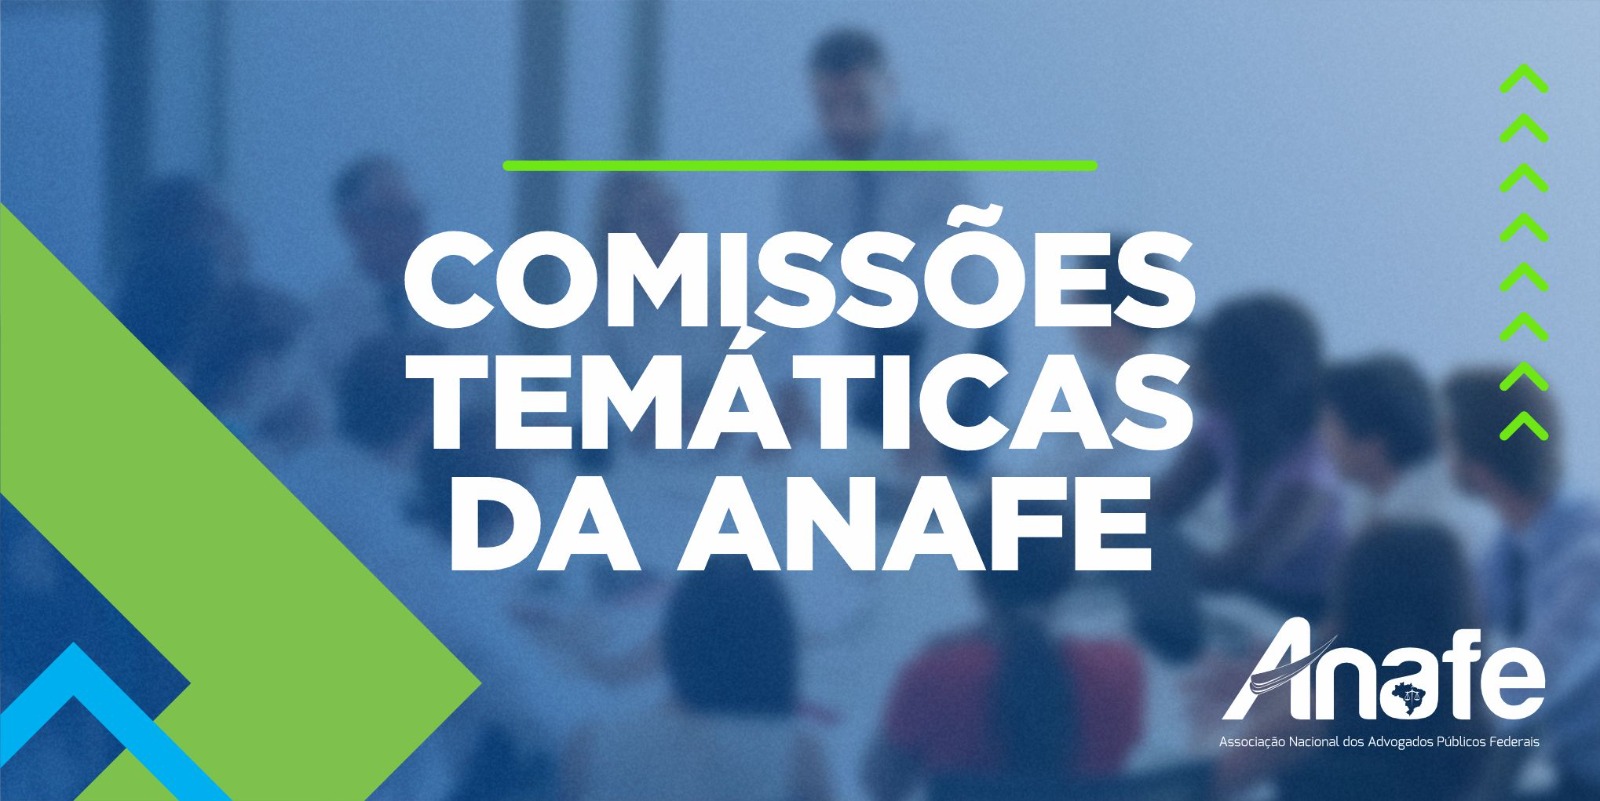 Abertas as inscrições para as comissões temáticas da ANAFE